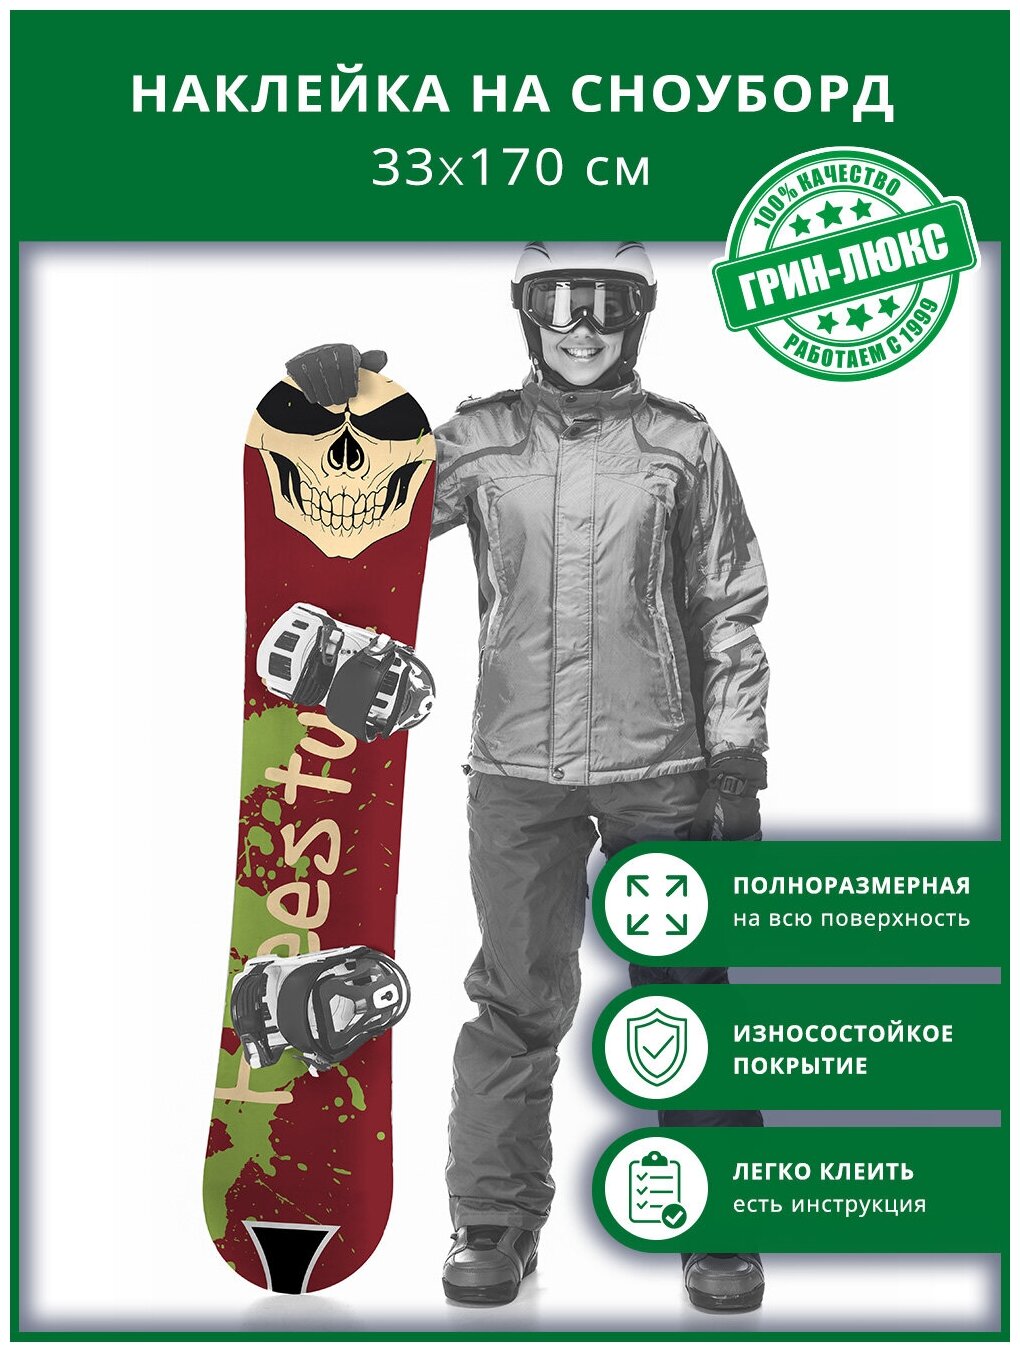 Наклейка на сноуборд с защитным глянцевым покрытием 33х170 см "Фристайл череп"